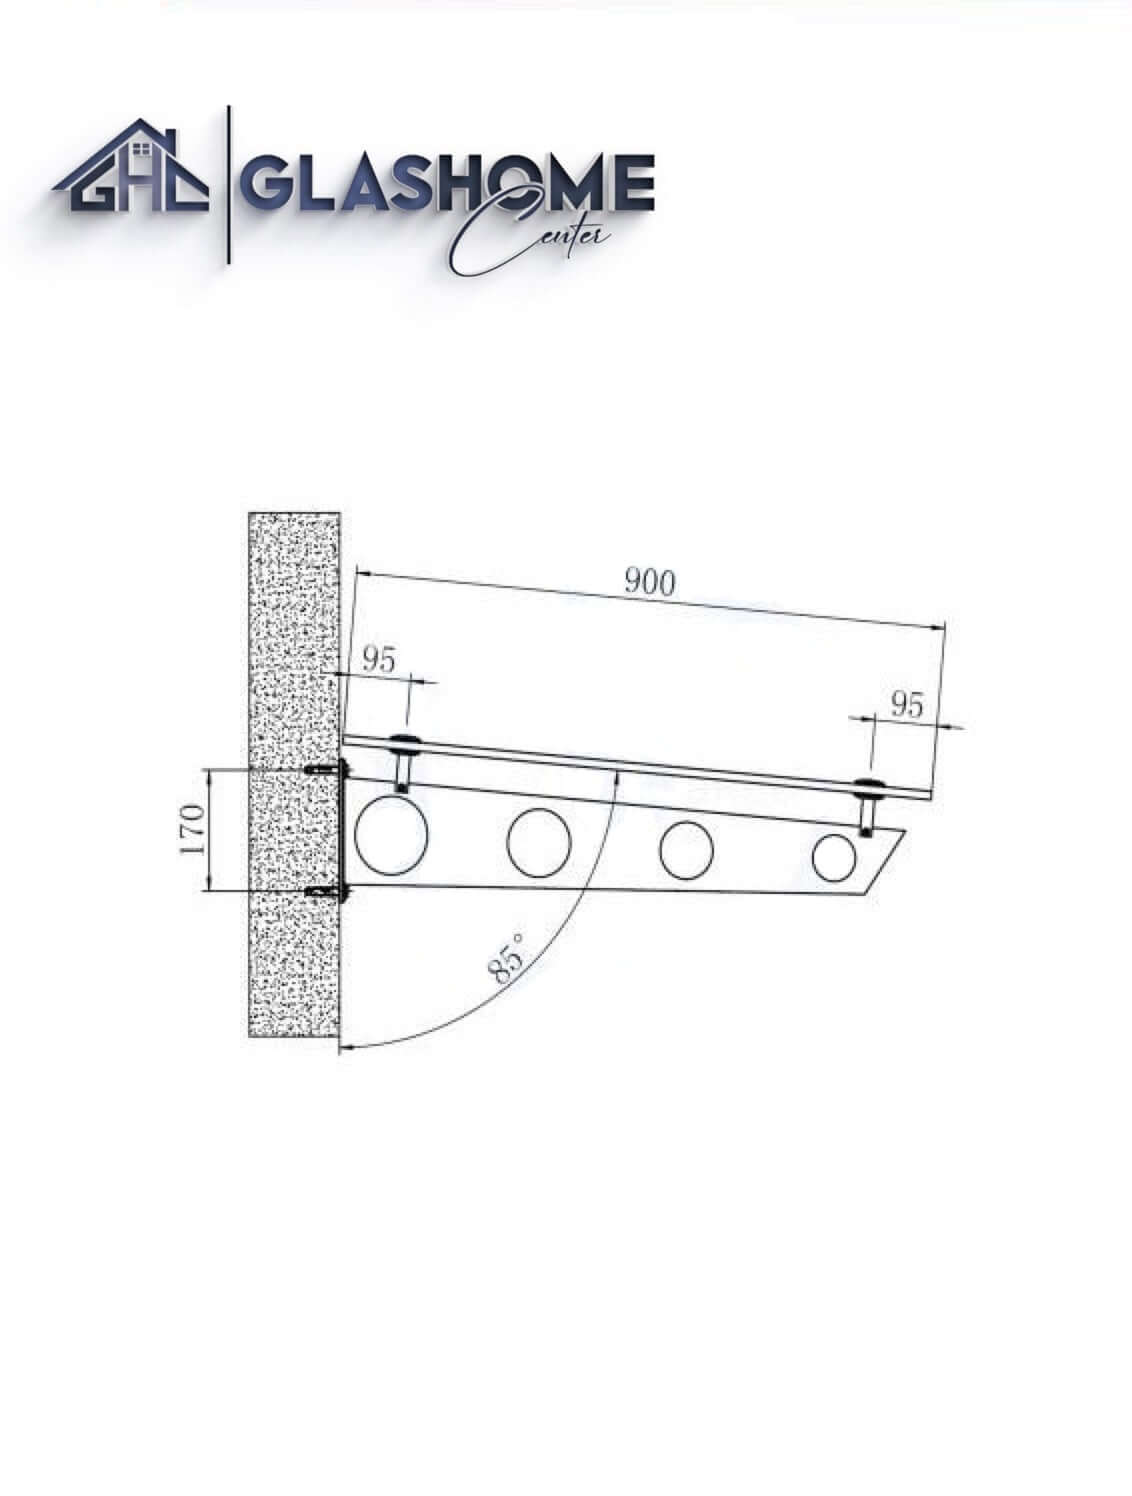 GlasHomeCenter - Glasvordach - Milchglas- 250x90cm - 13.1mm VSG - inkl. 3 Edelstahlhalterungen Variante "Stockholm"